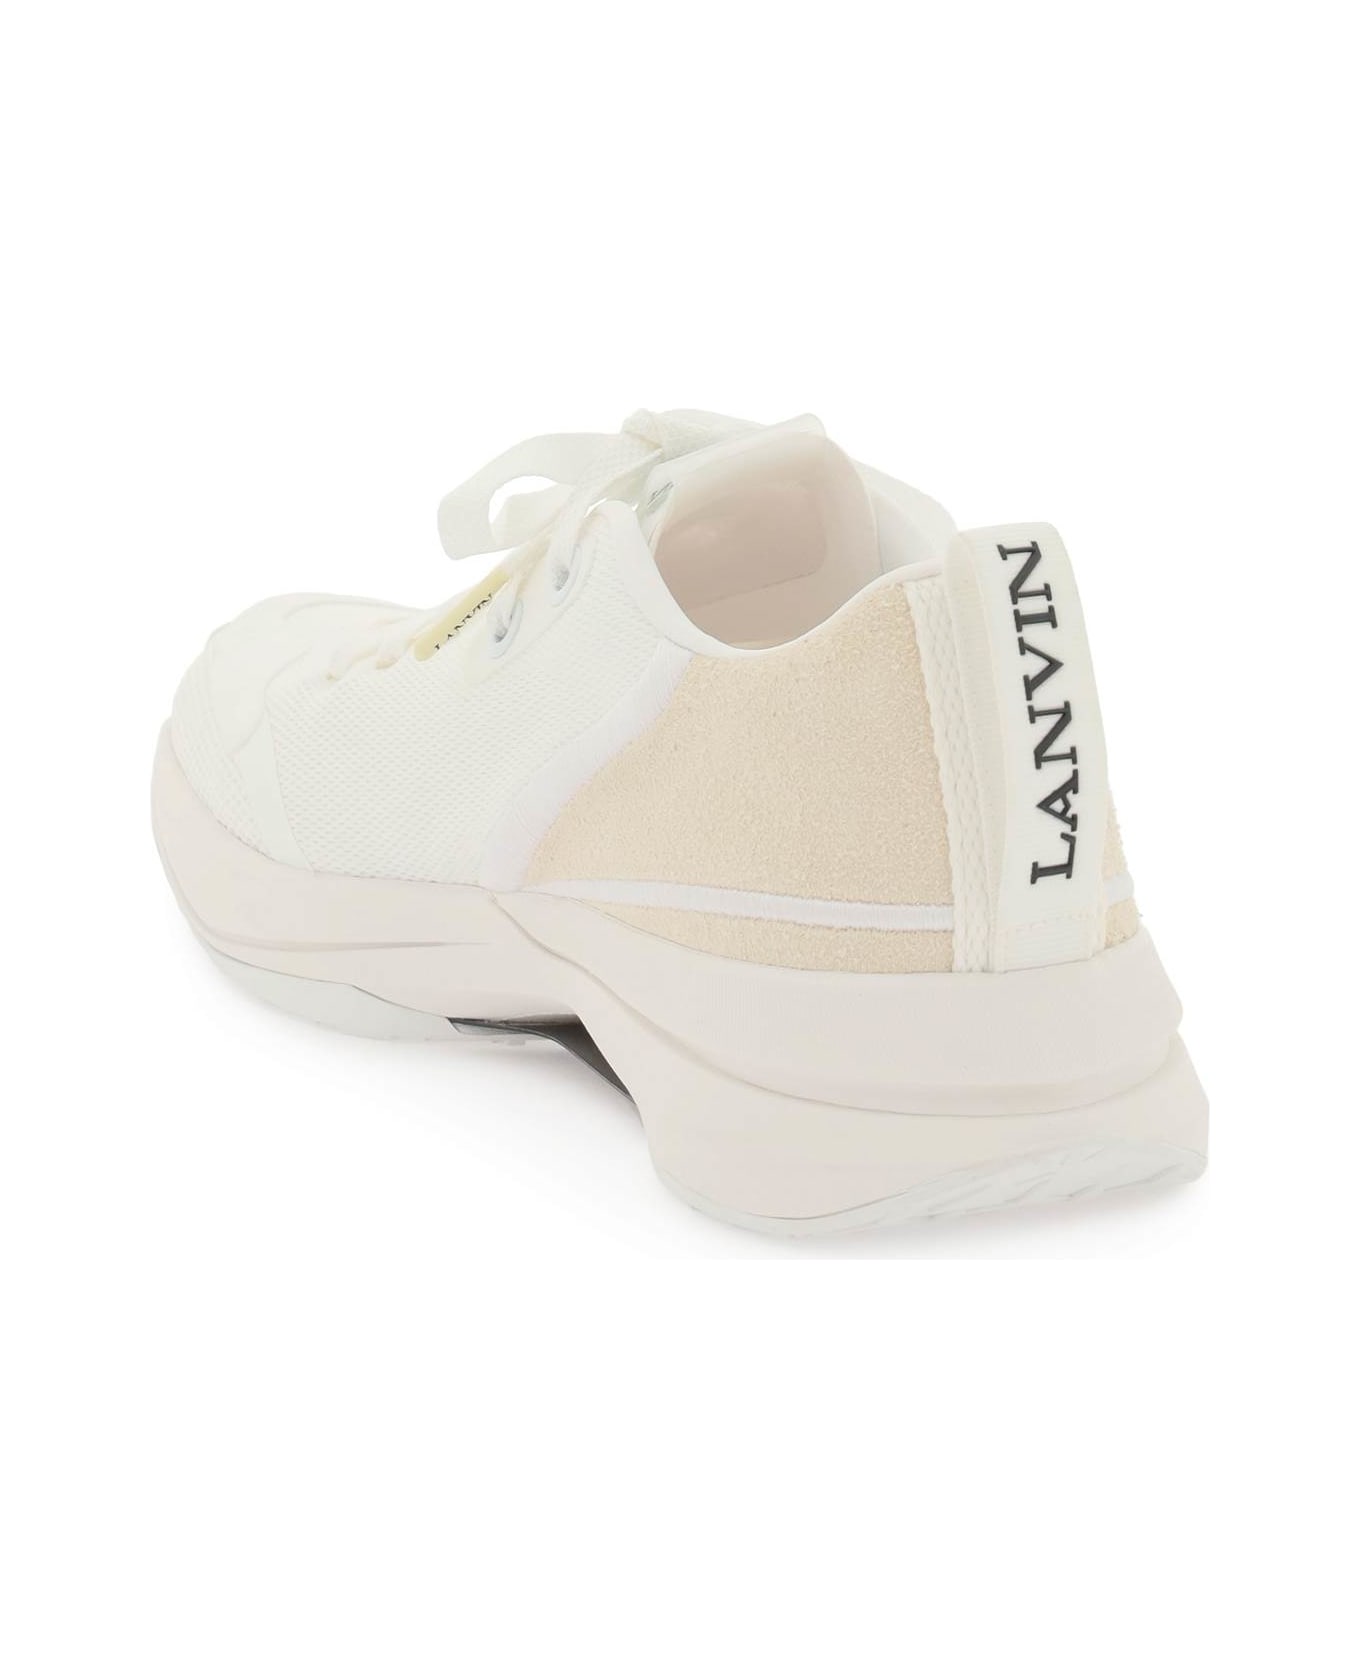 Lanvin Mesh Li Sneakers - Bianco